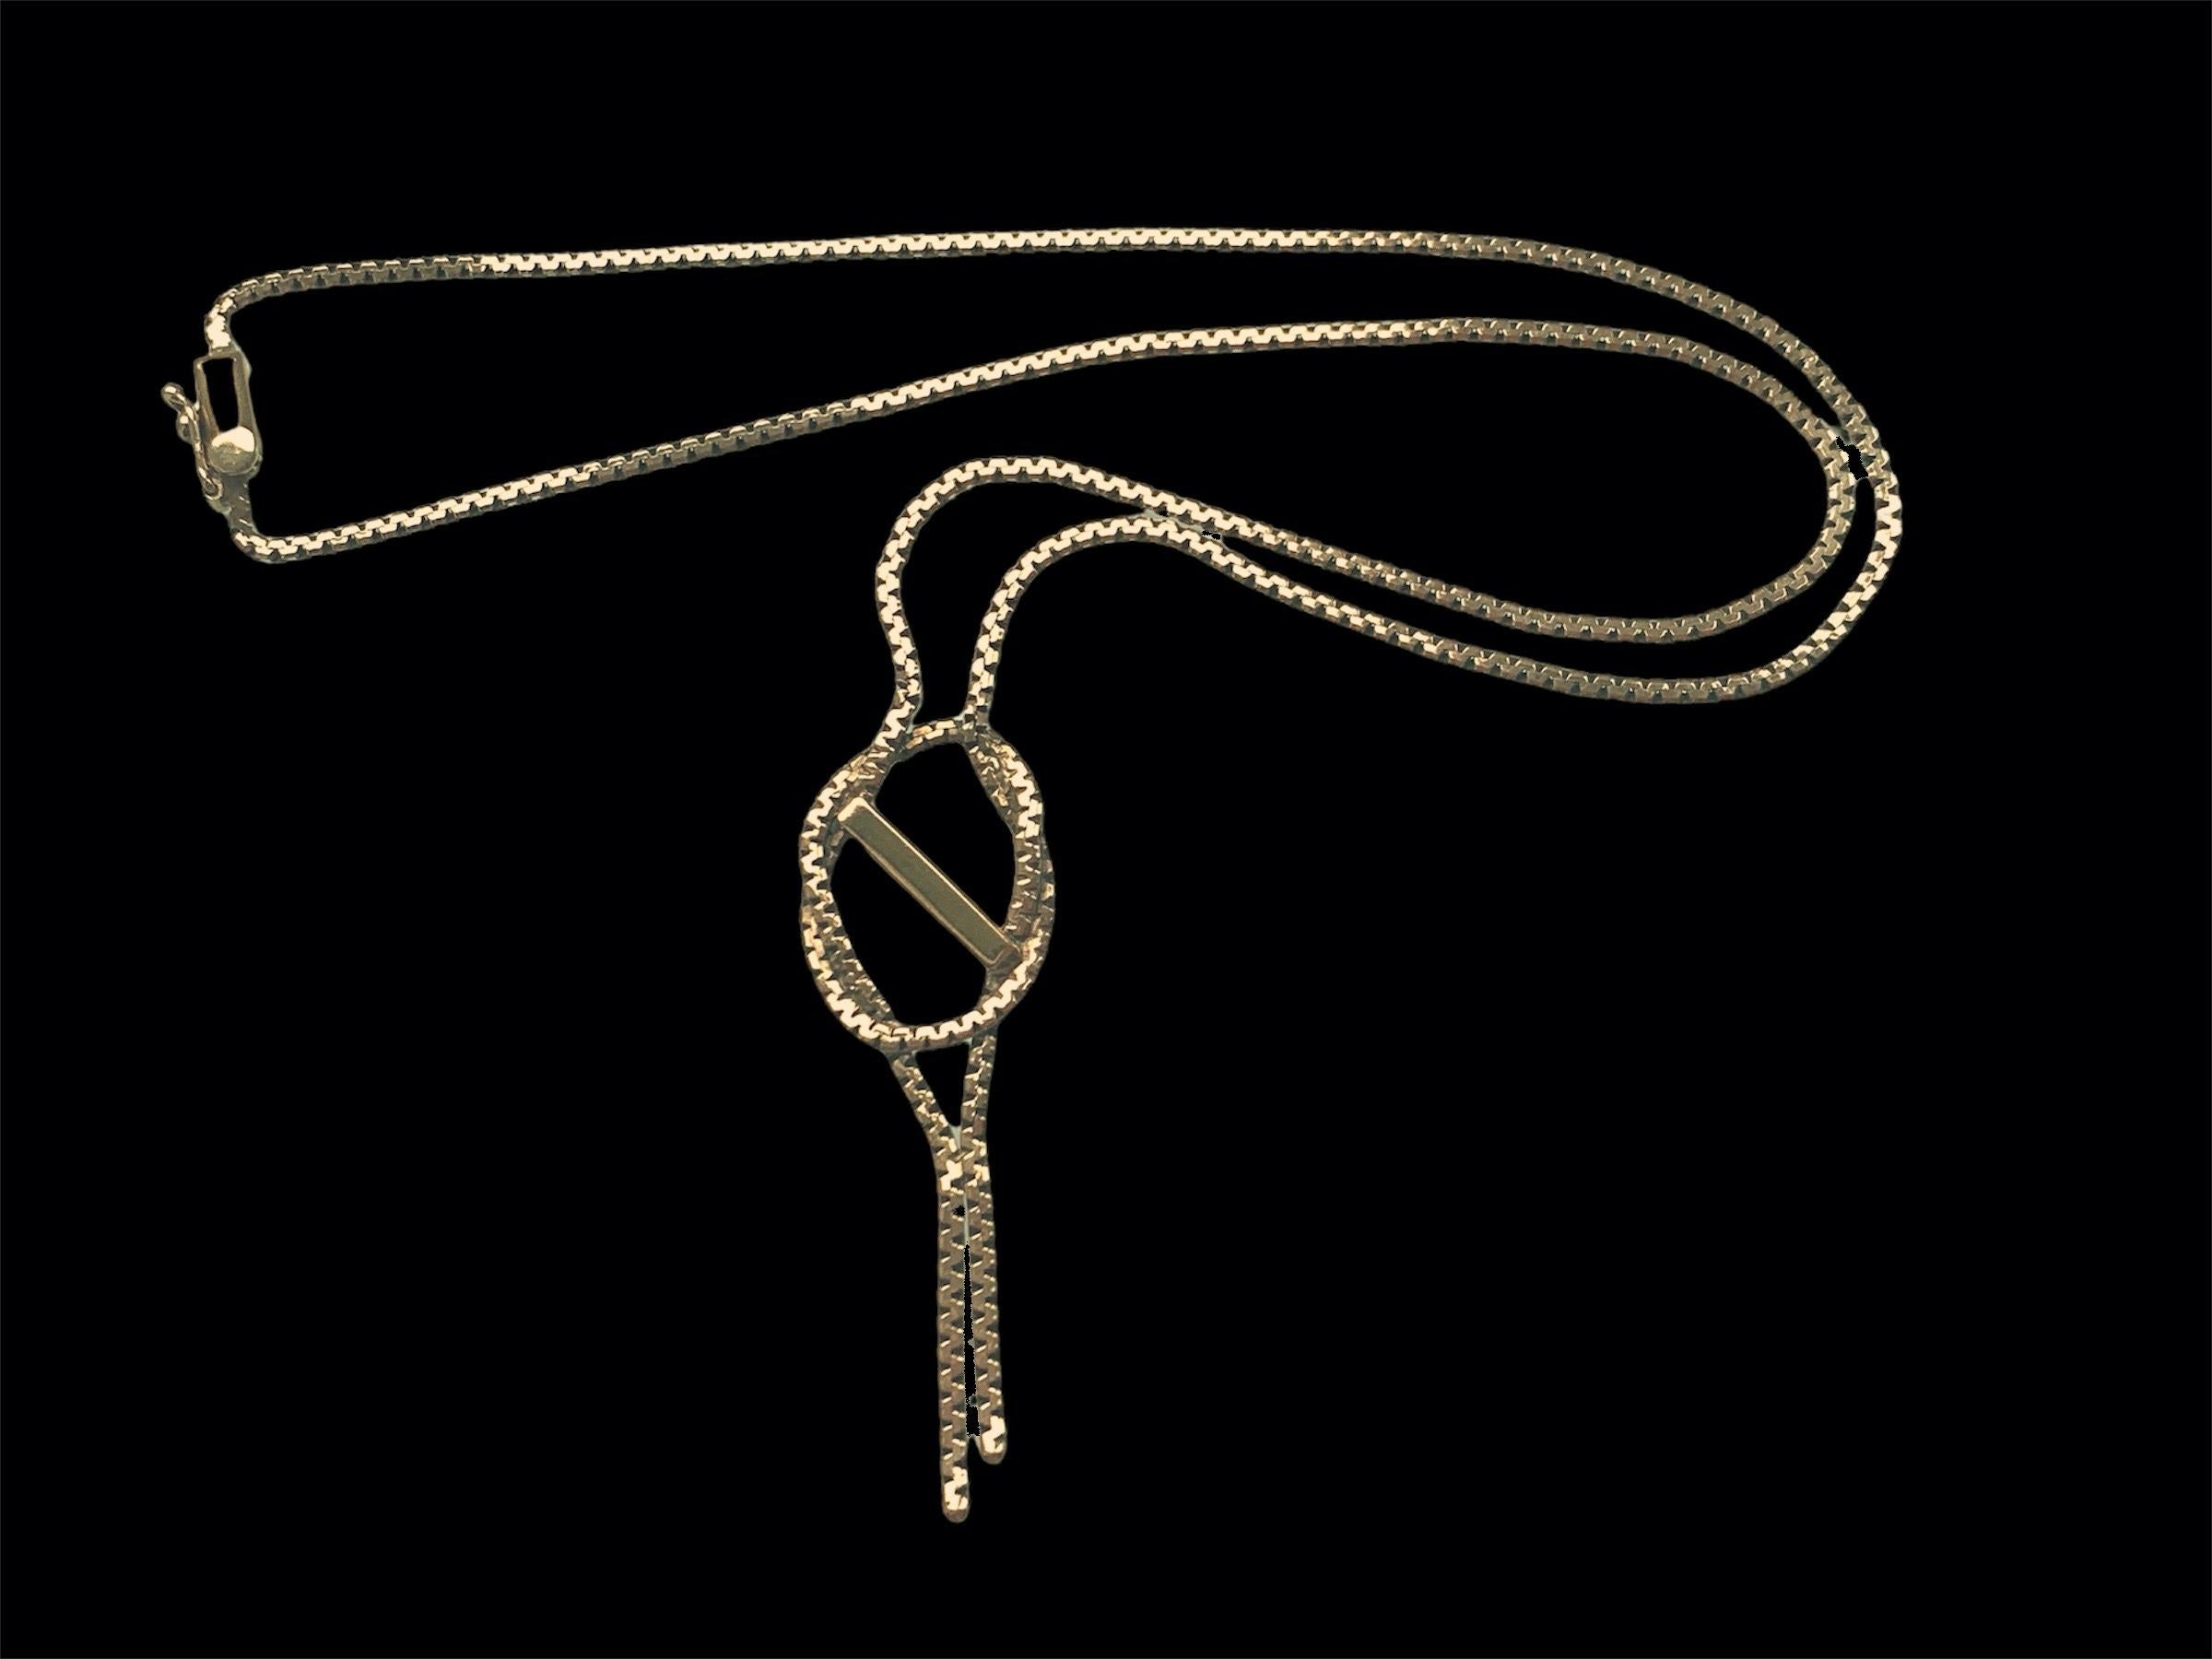 9ct 375 Gold Seltene Vintage Halskette
Schöne Vintage-Halskette in sehr gutem Zustand
Vollständig gepunzt, datiert 1978 - London Import
Kette Länge 17 Zoll x 2mm Dicke
Die Schließe ist in einwandfreiem Zustand.